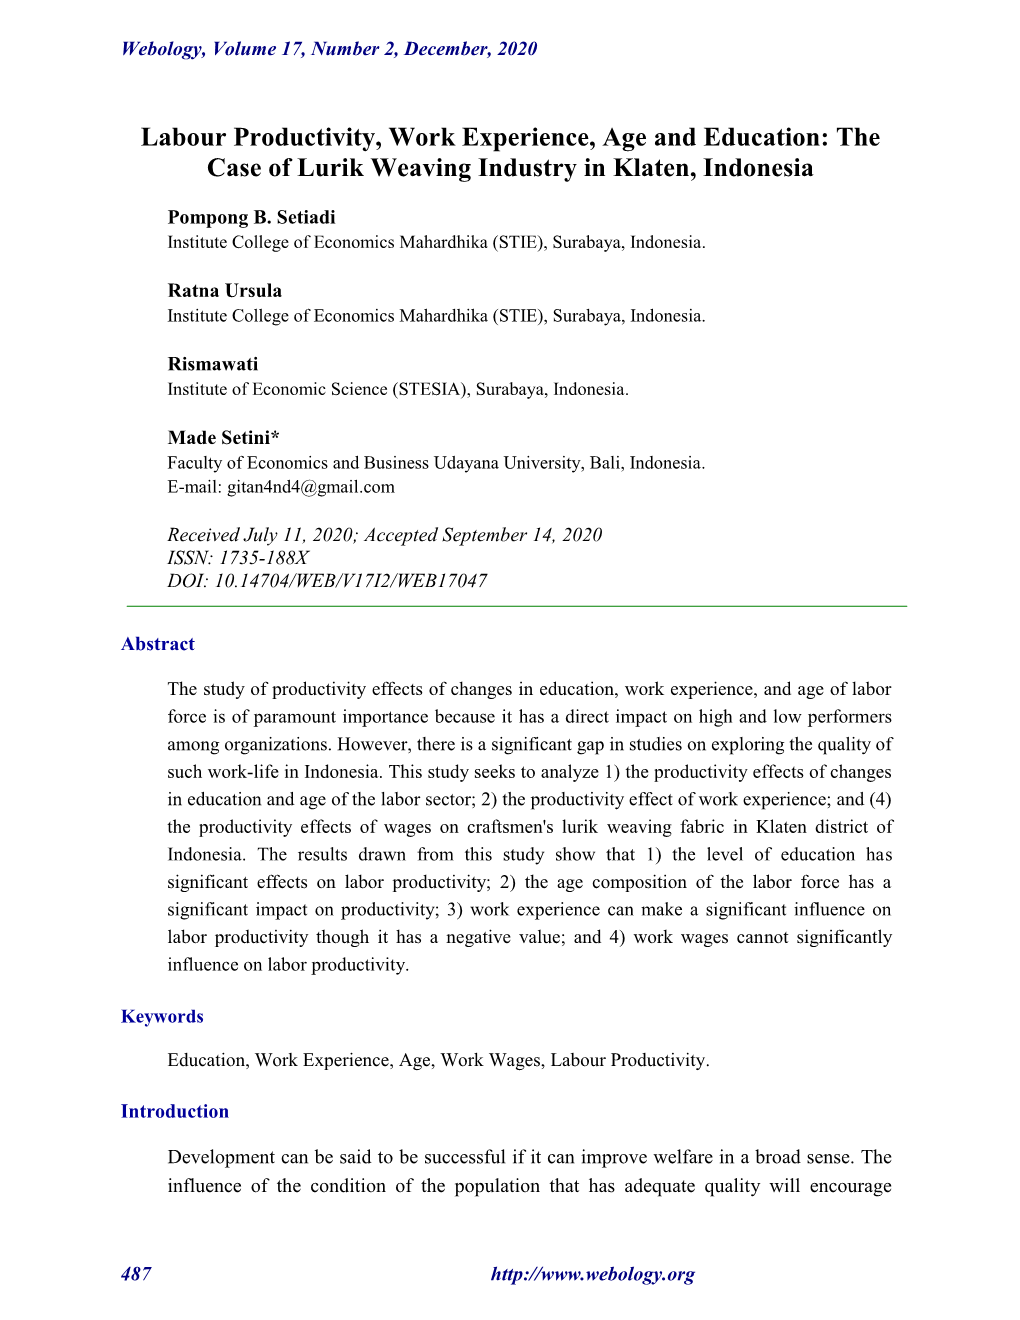 The Case of Lurik Weaving Industry in Klaten, Indonesia